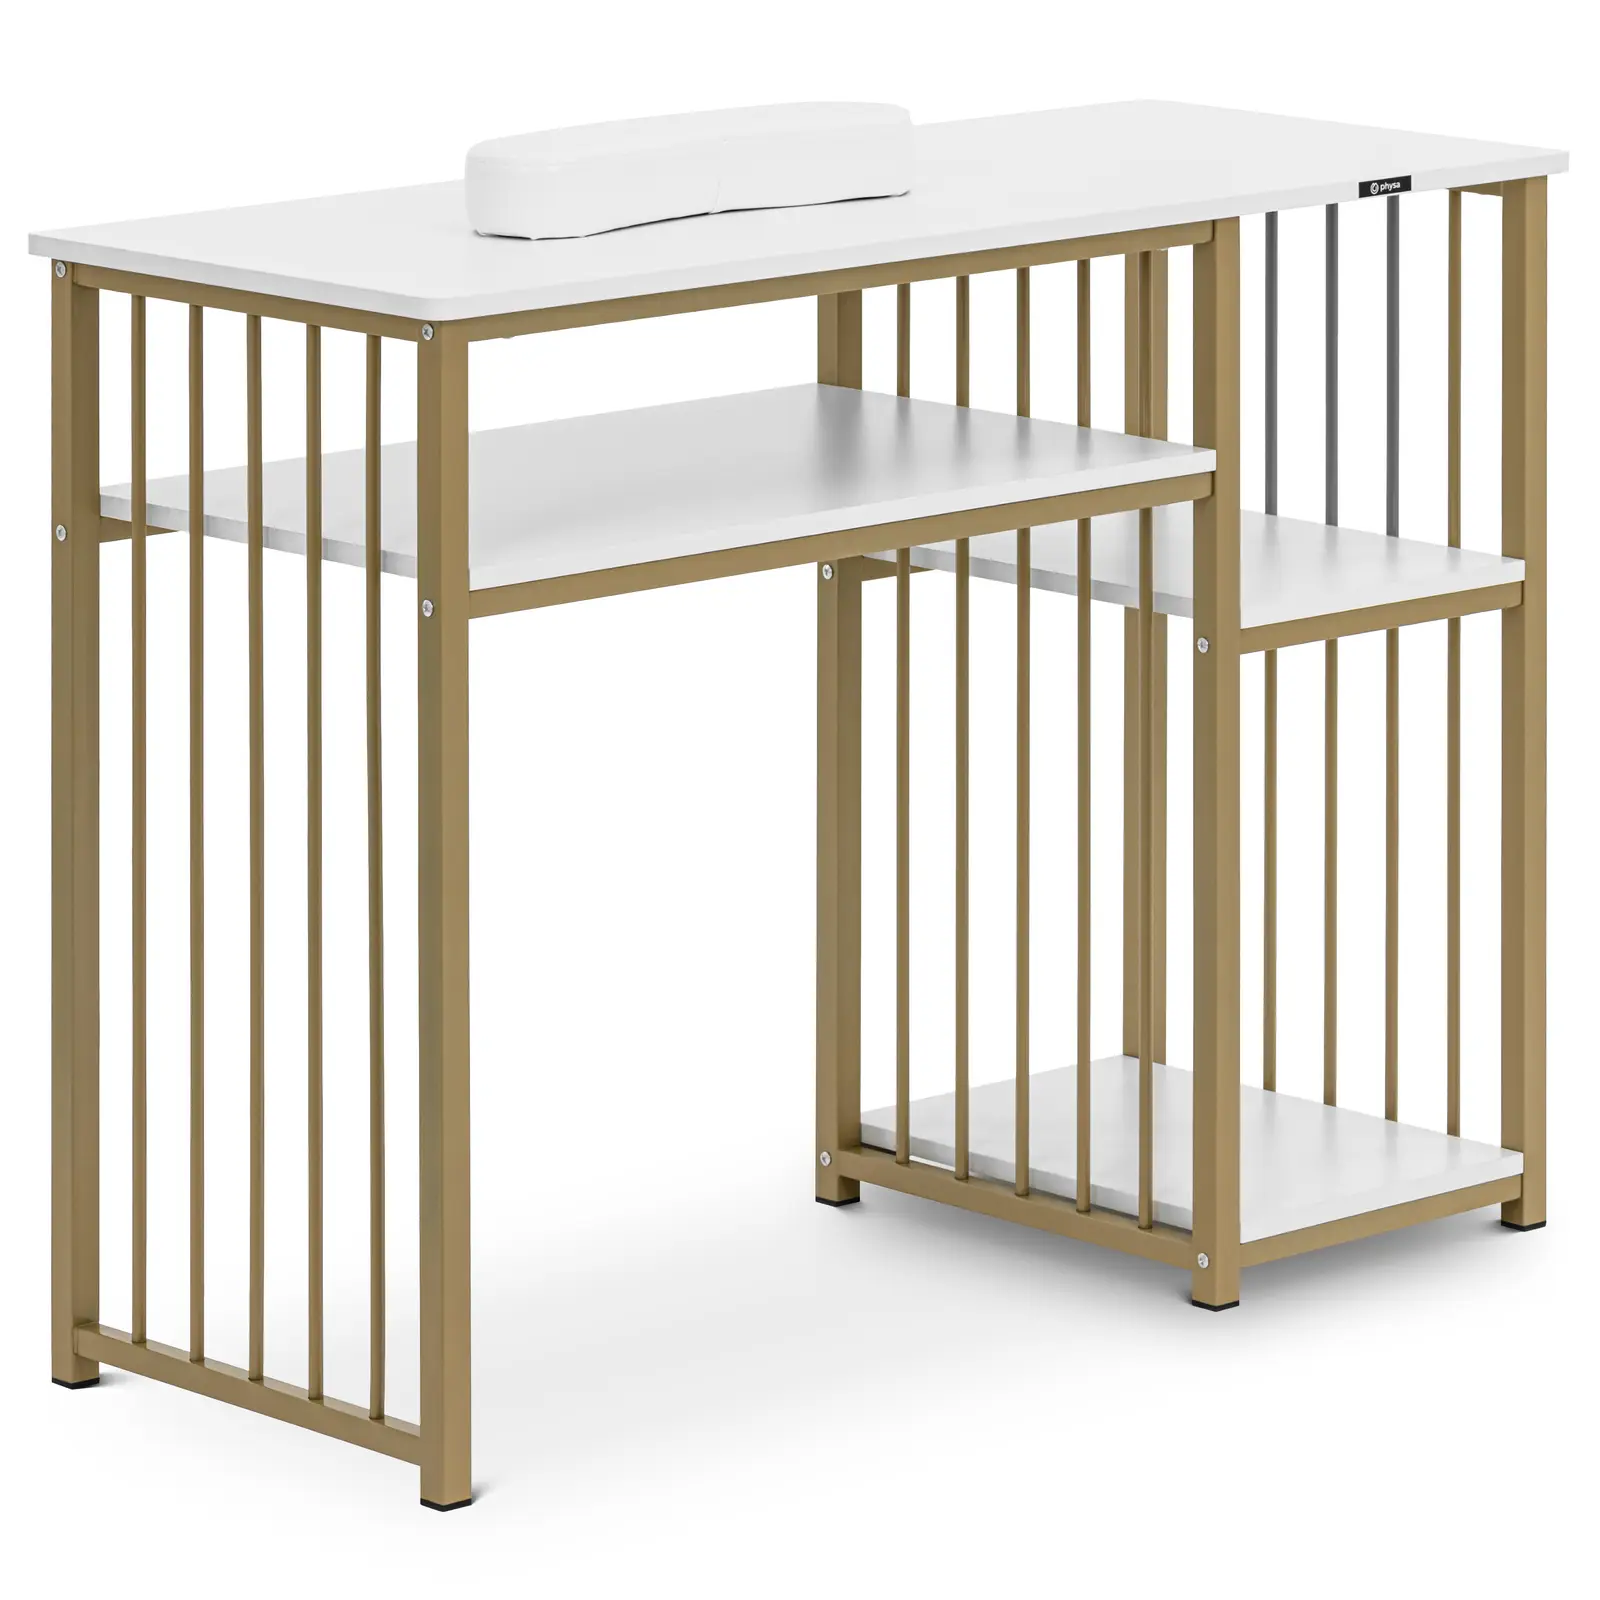 Table de manucure - cadre en fer - blanc / doré - 3 étagères - repose-mains